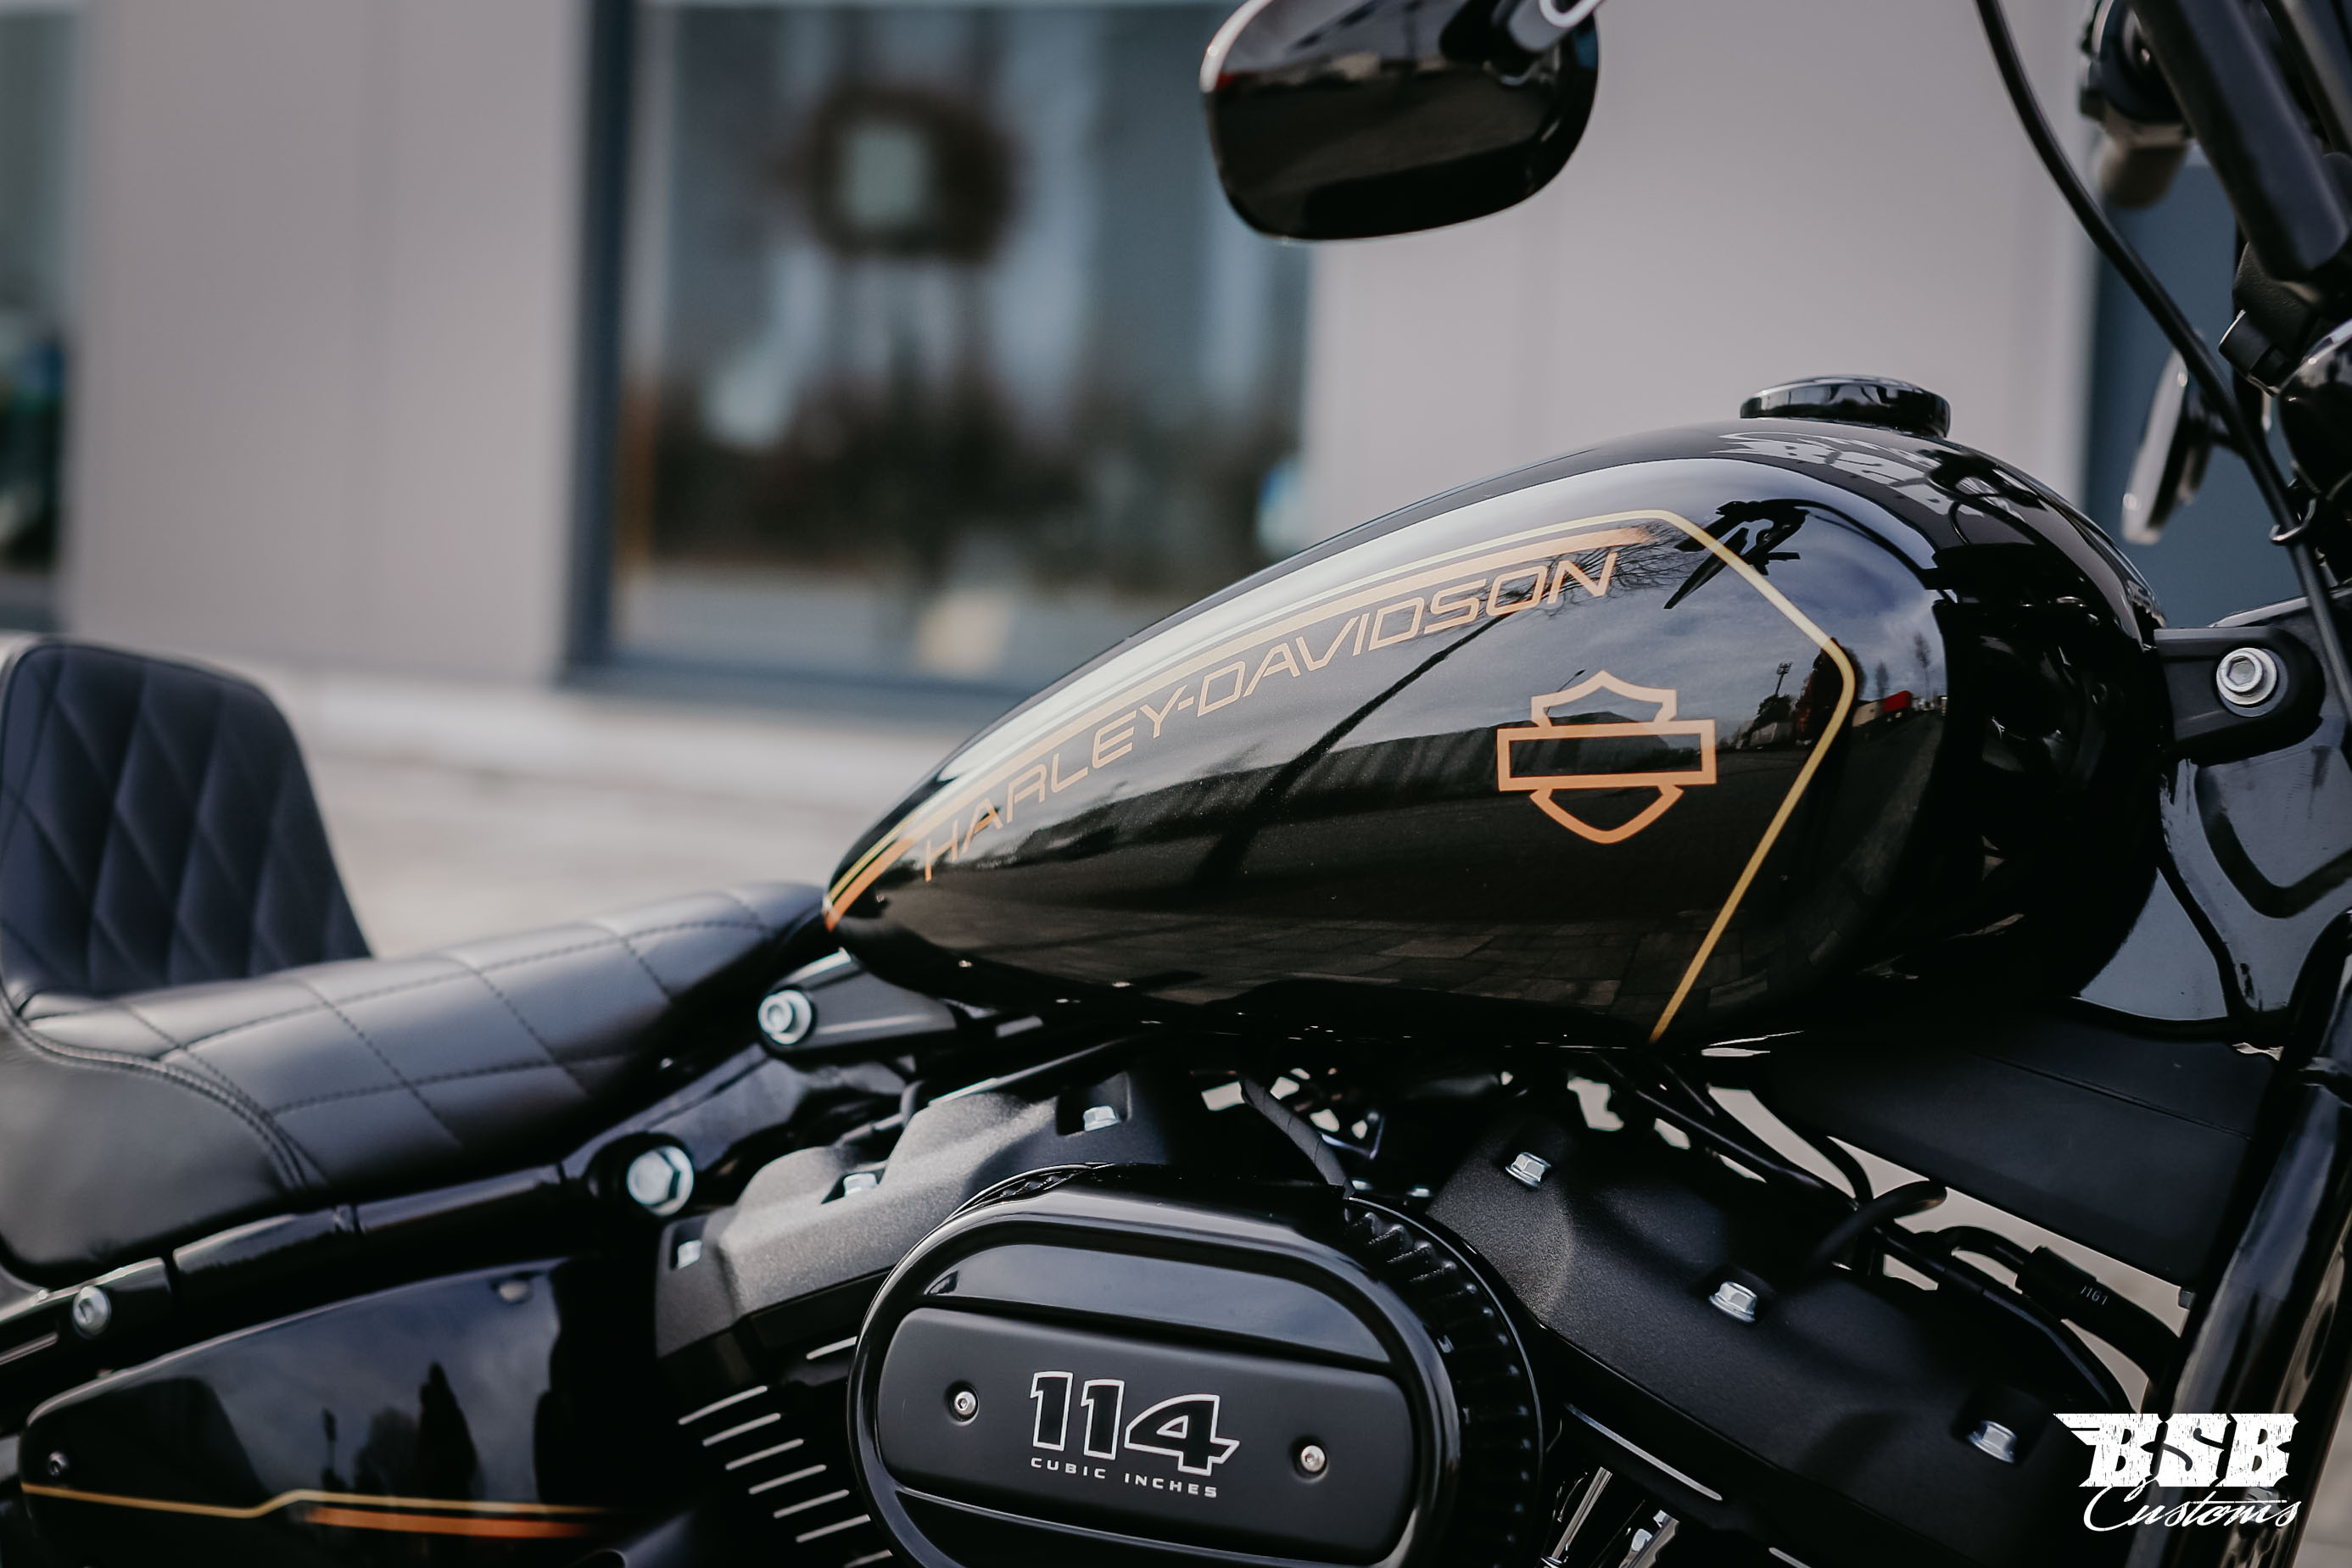 2022 Harley Davidson FXBBS Street BOB 114 CUI Finanzierung auch ohne Anzahlung möglich 